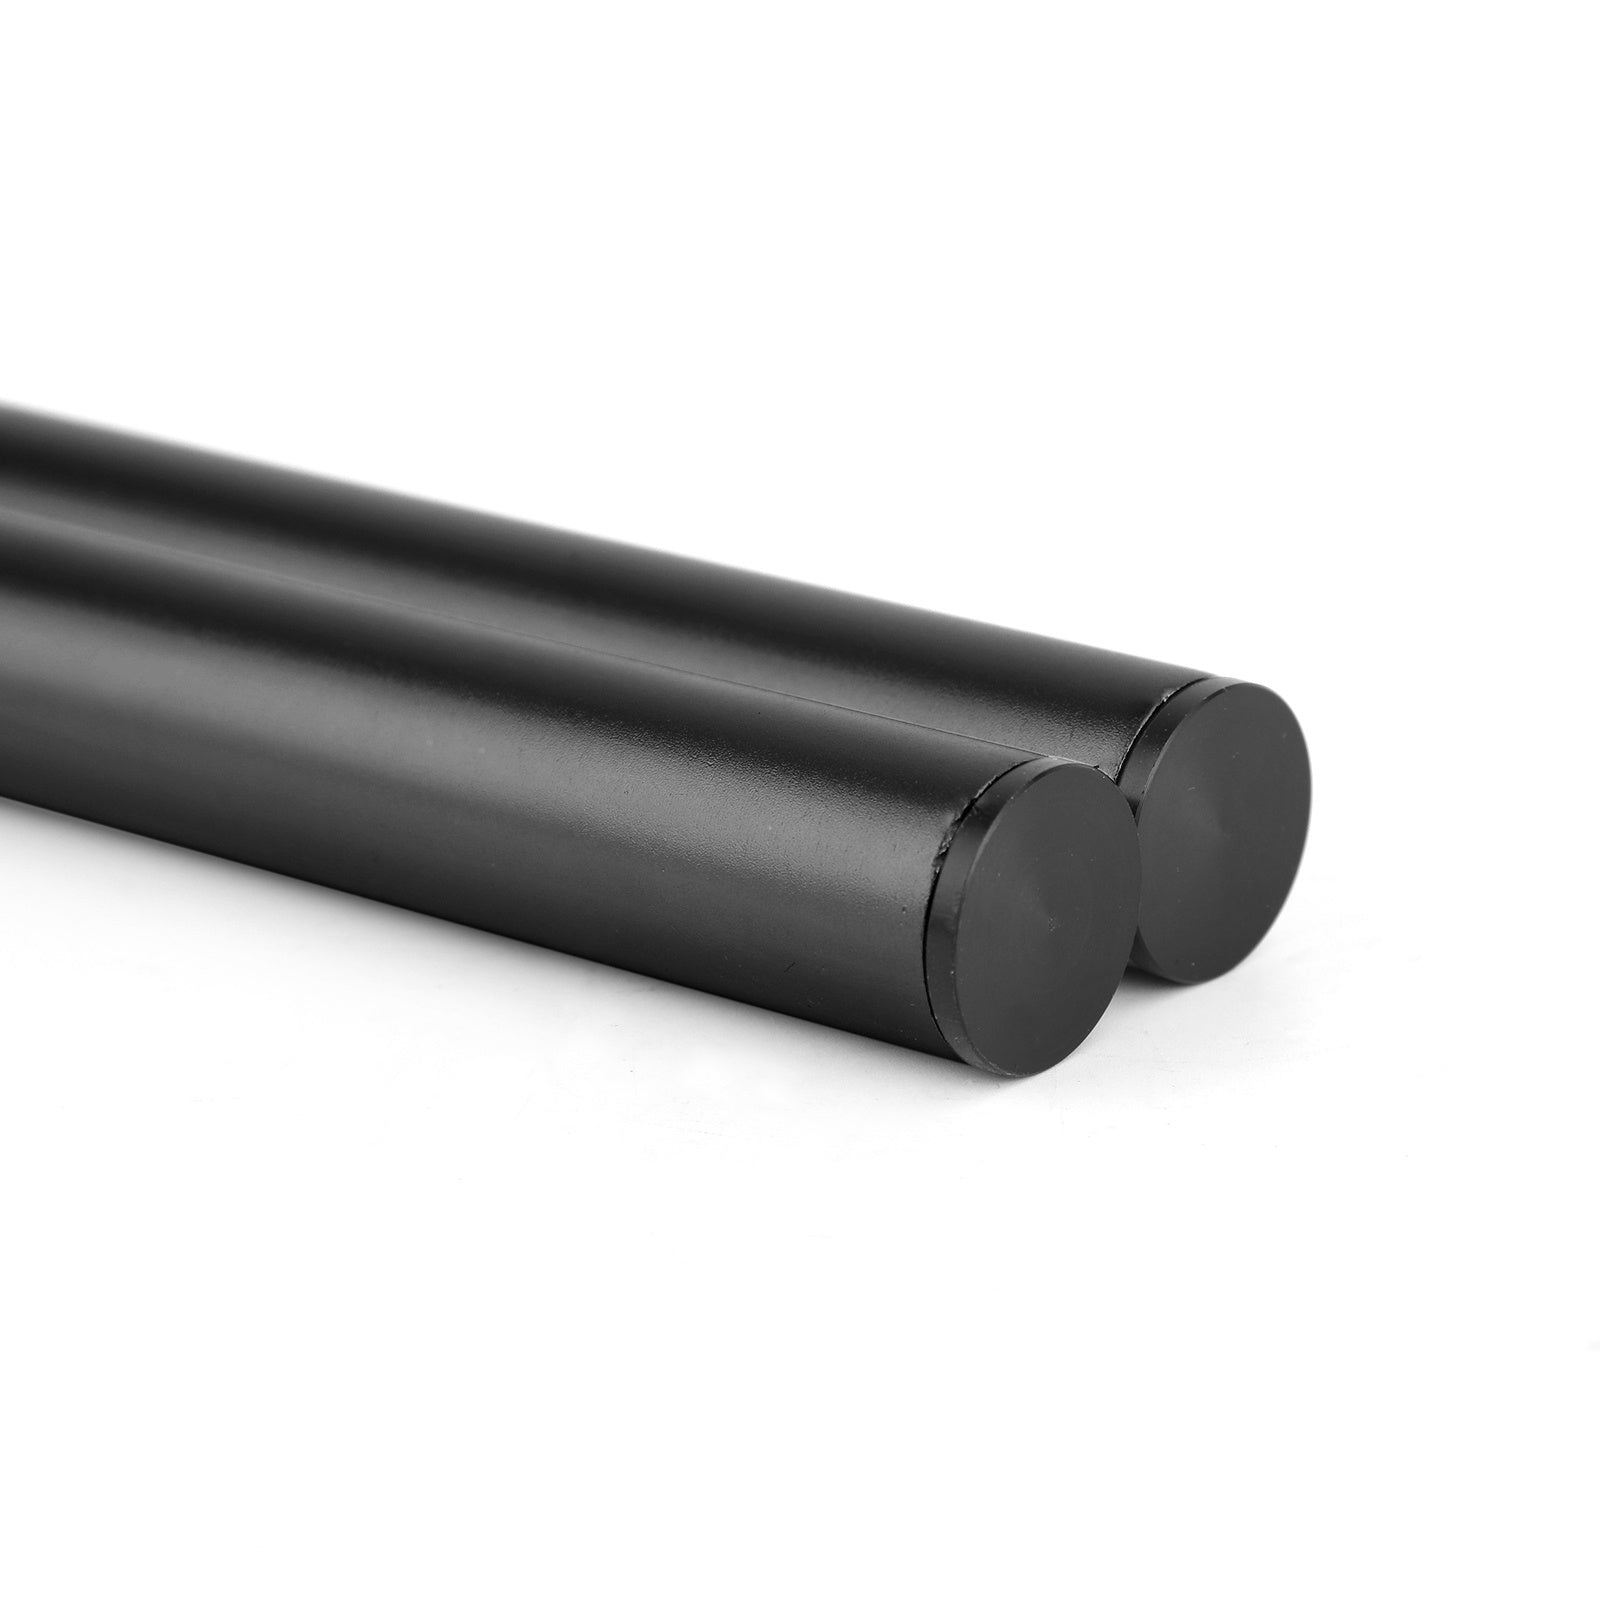 Kit manubrio tubo forcella universale regolabile girevole in billet CNC da 45 mm generico